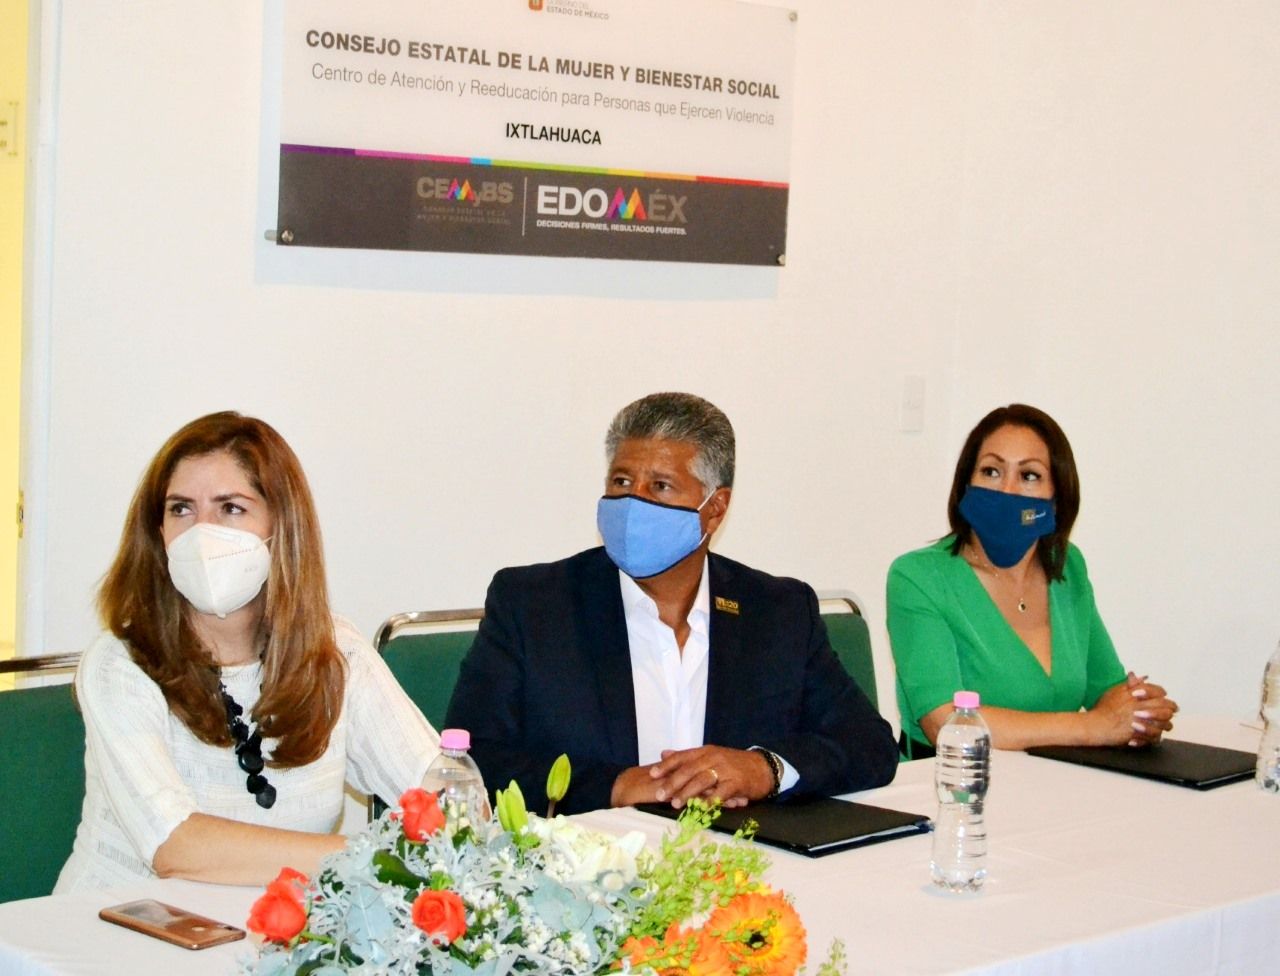 El CEMYBS y ayuntamiento de Ixtlahuaca firman convenio para la operación de un Centro de Atención y Educación para personas que ejercen violencia